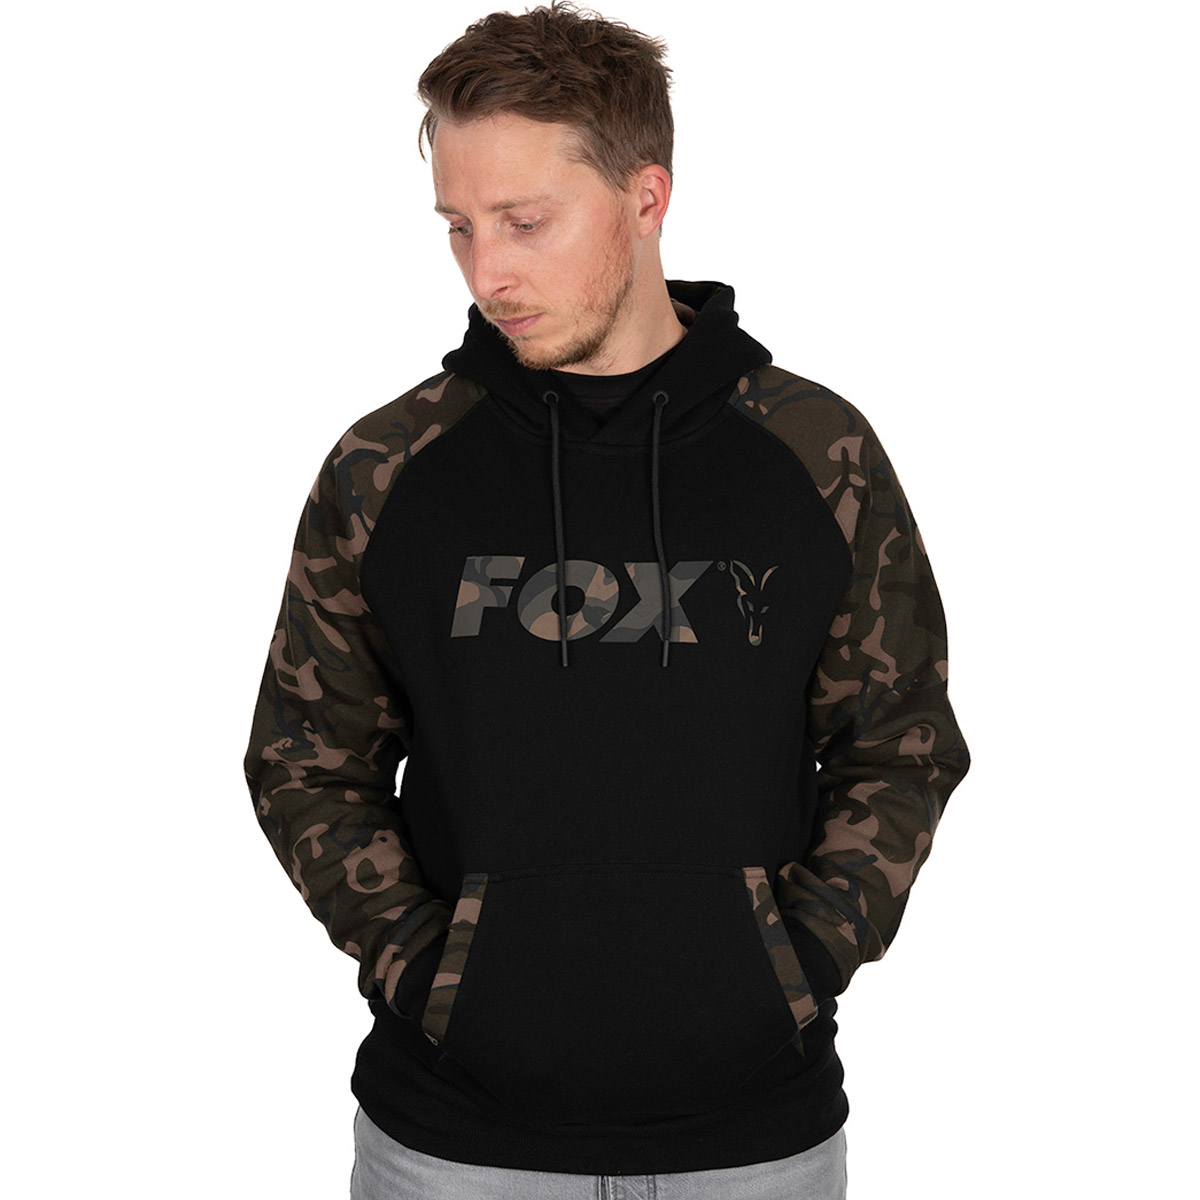 Fox Black Camo Raglan Hoody -  S -  M -  L -  XL -  XXL -  XXXL